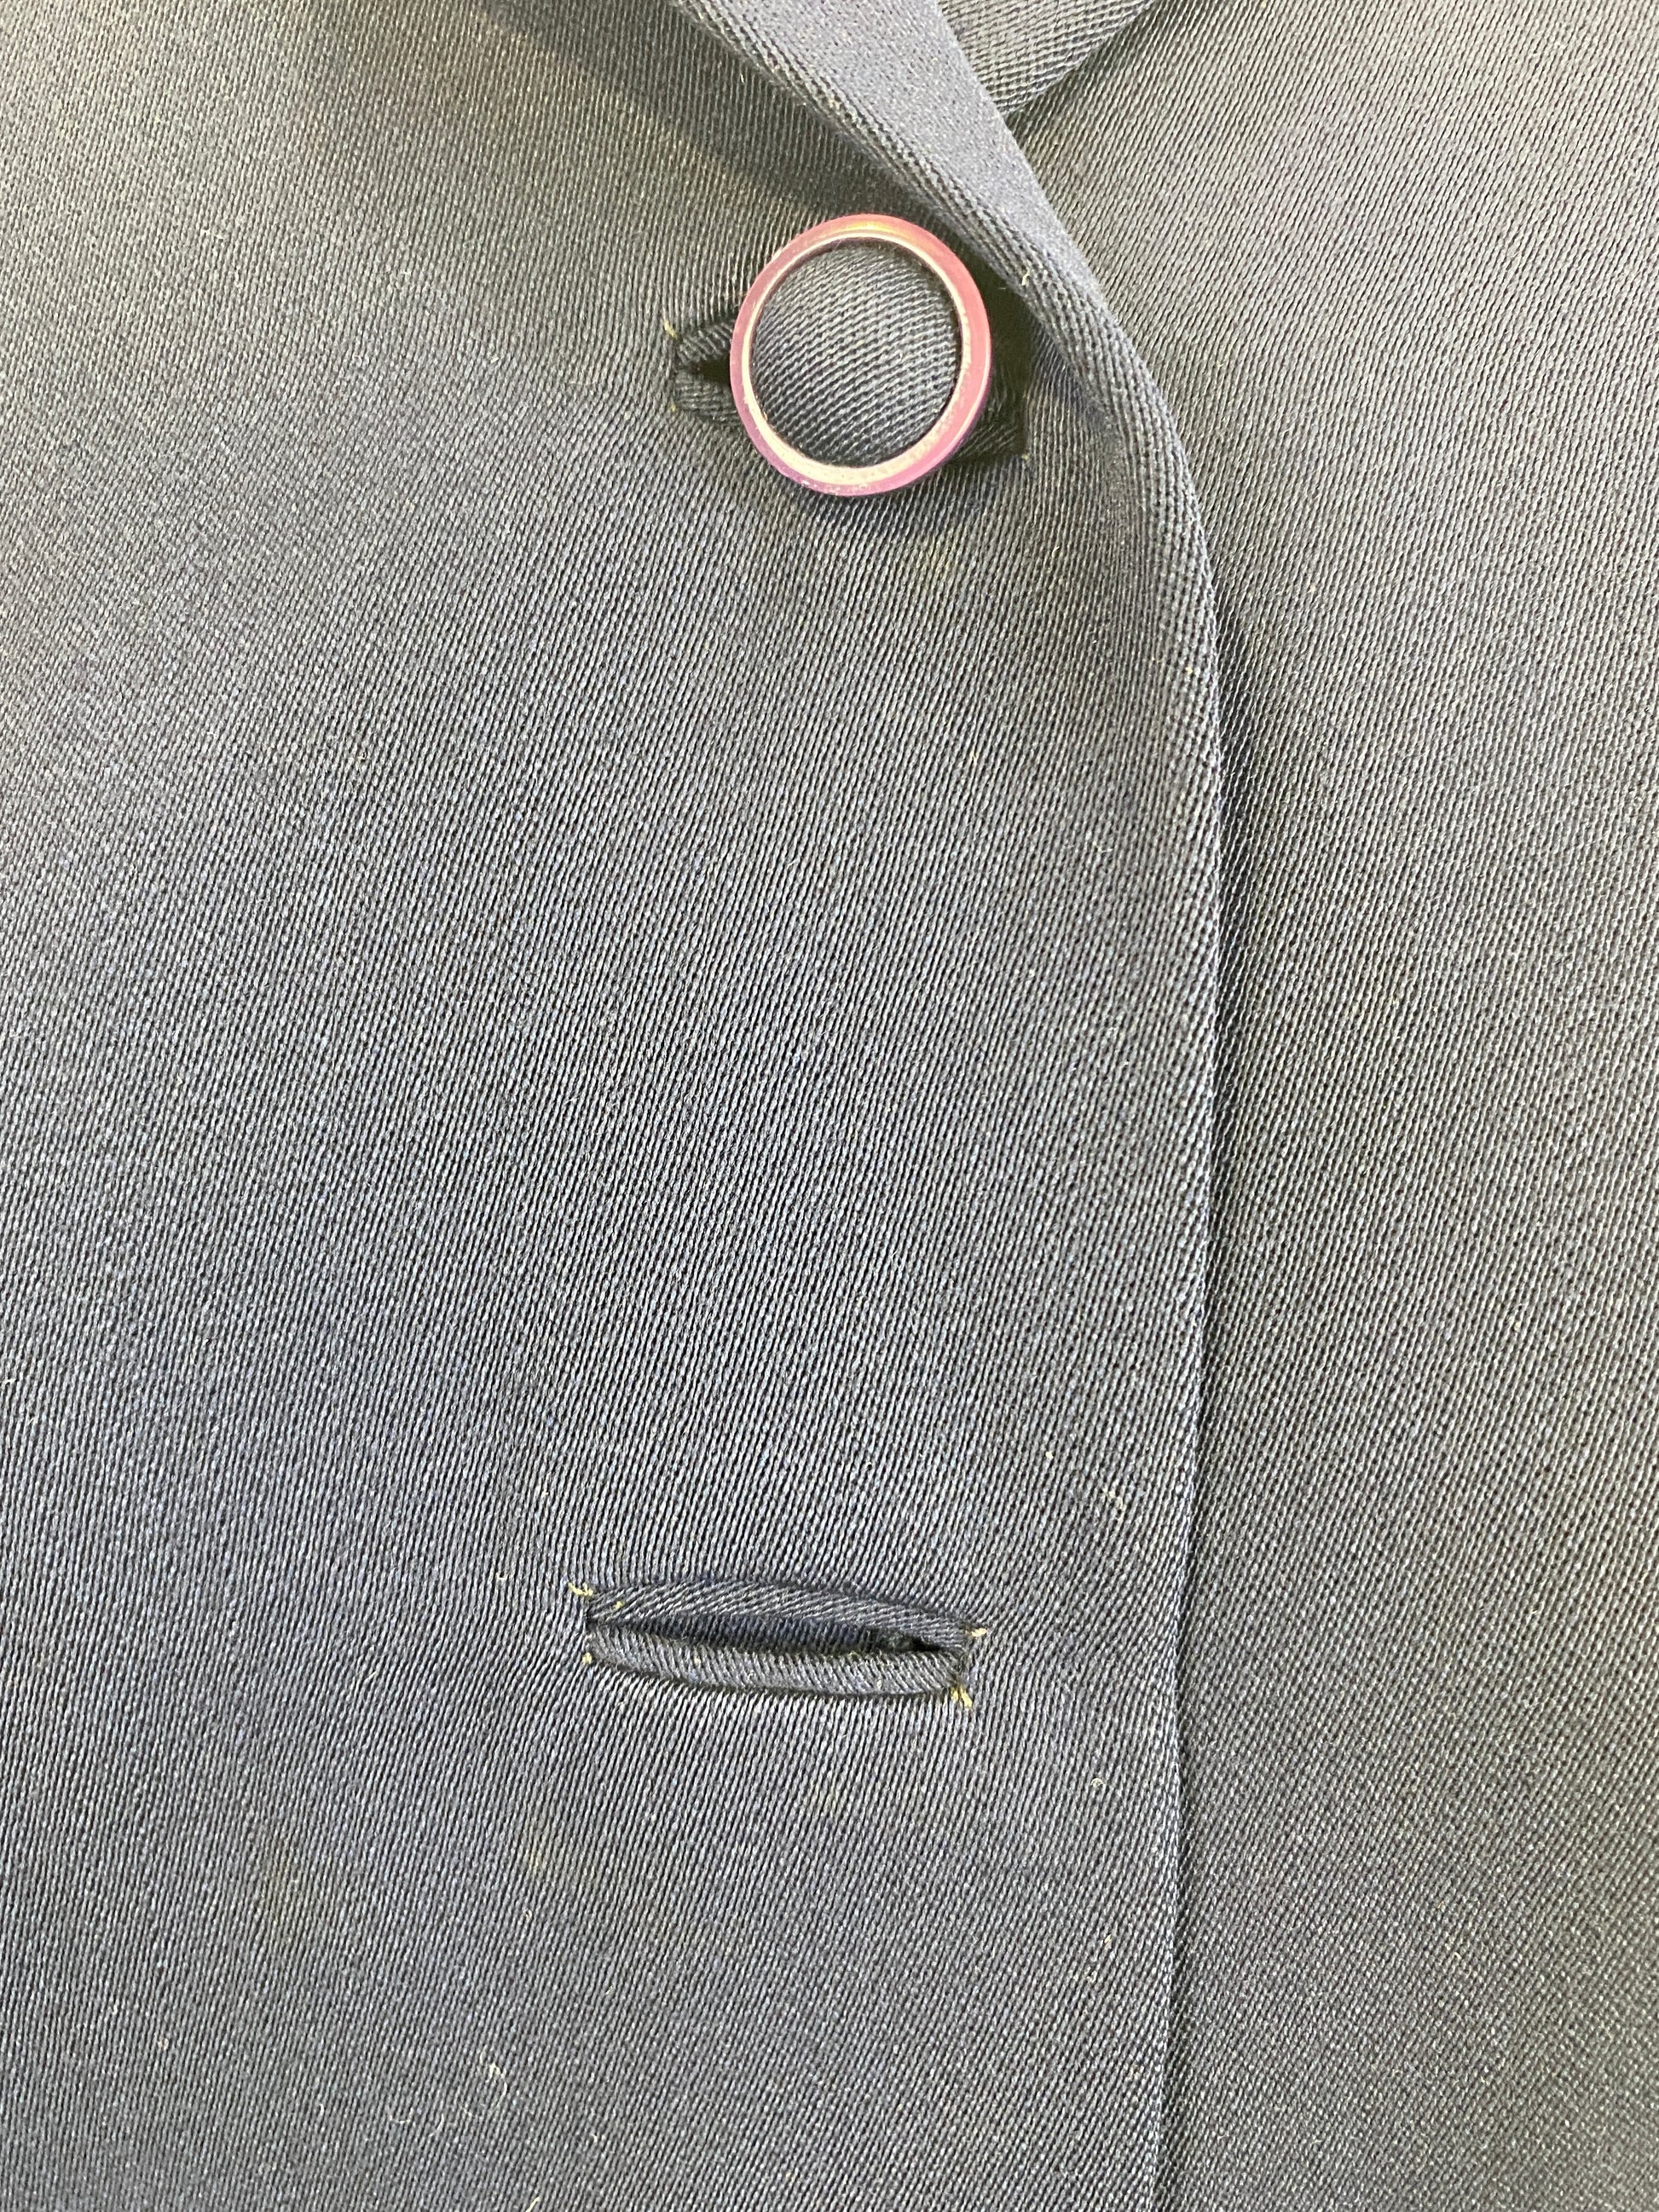 Vintage 1940s Women's Tailored Navy Wool-gabardine Jacket, Small